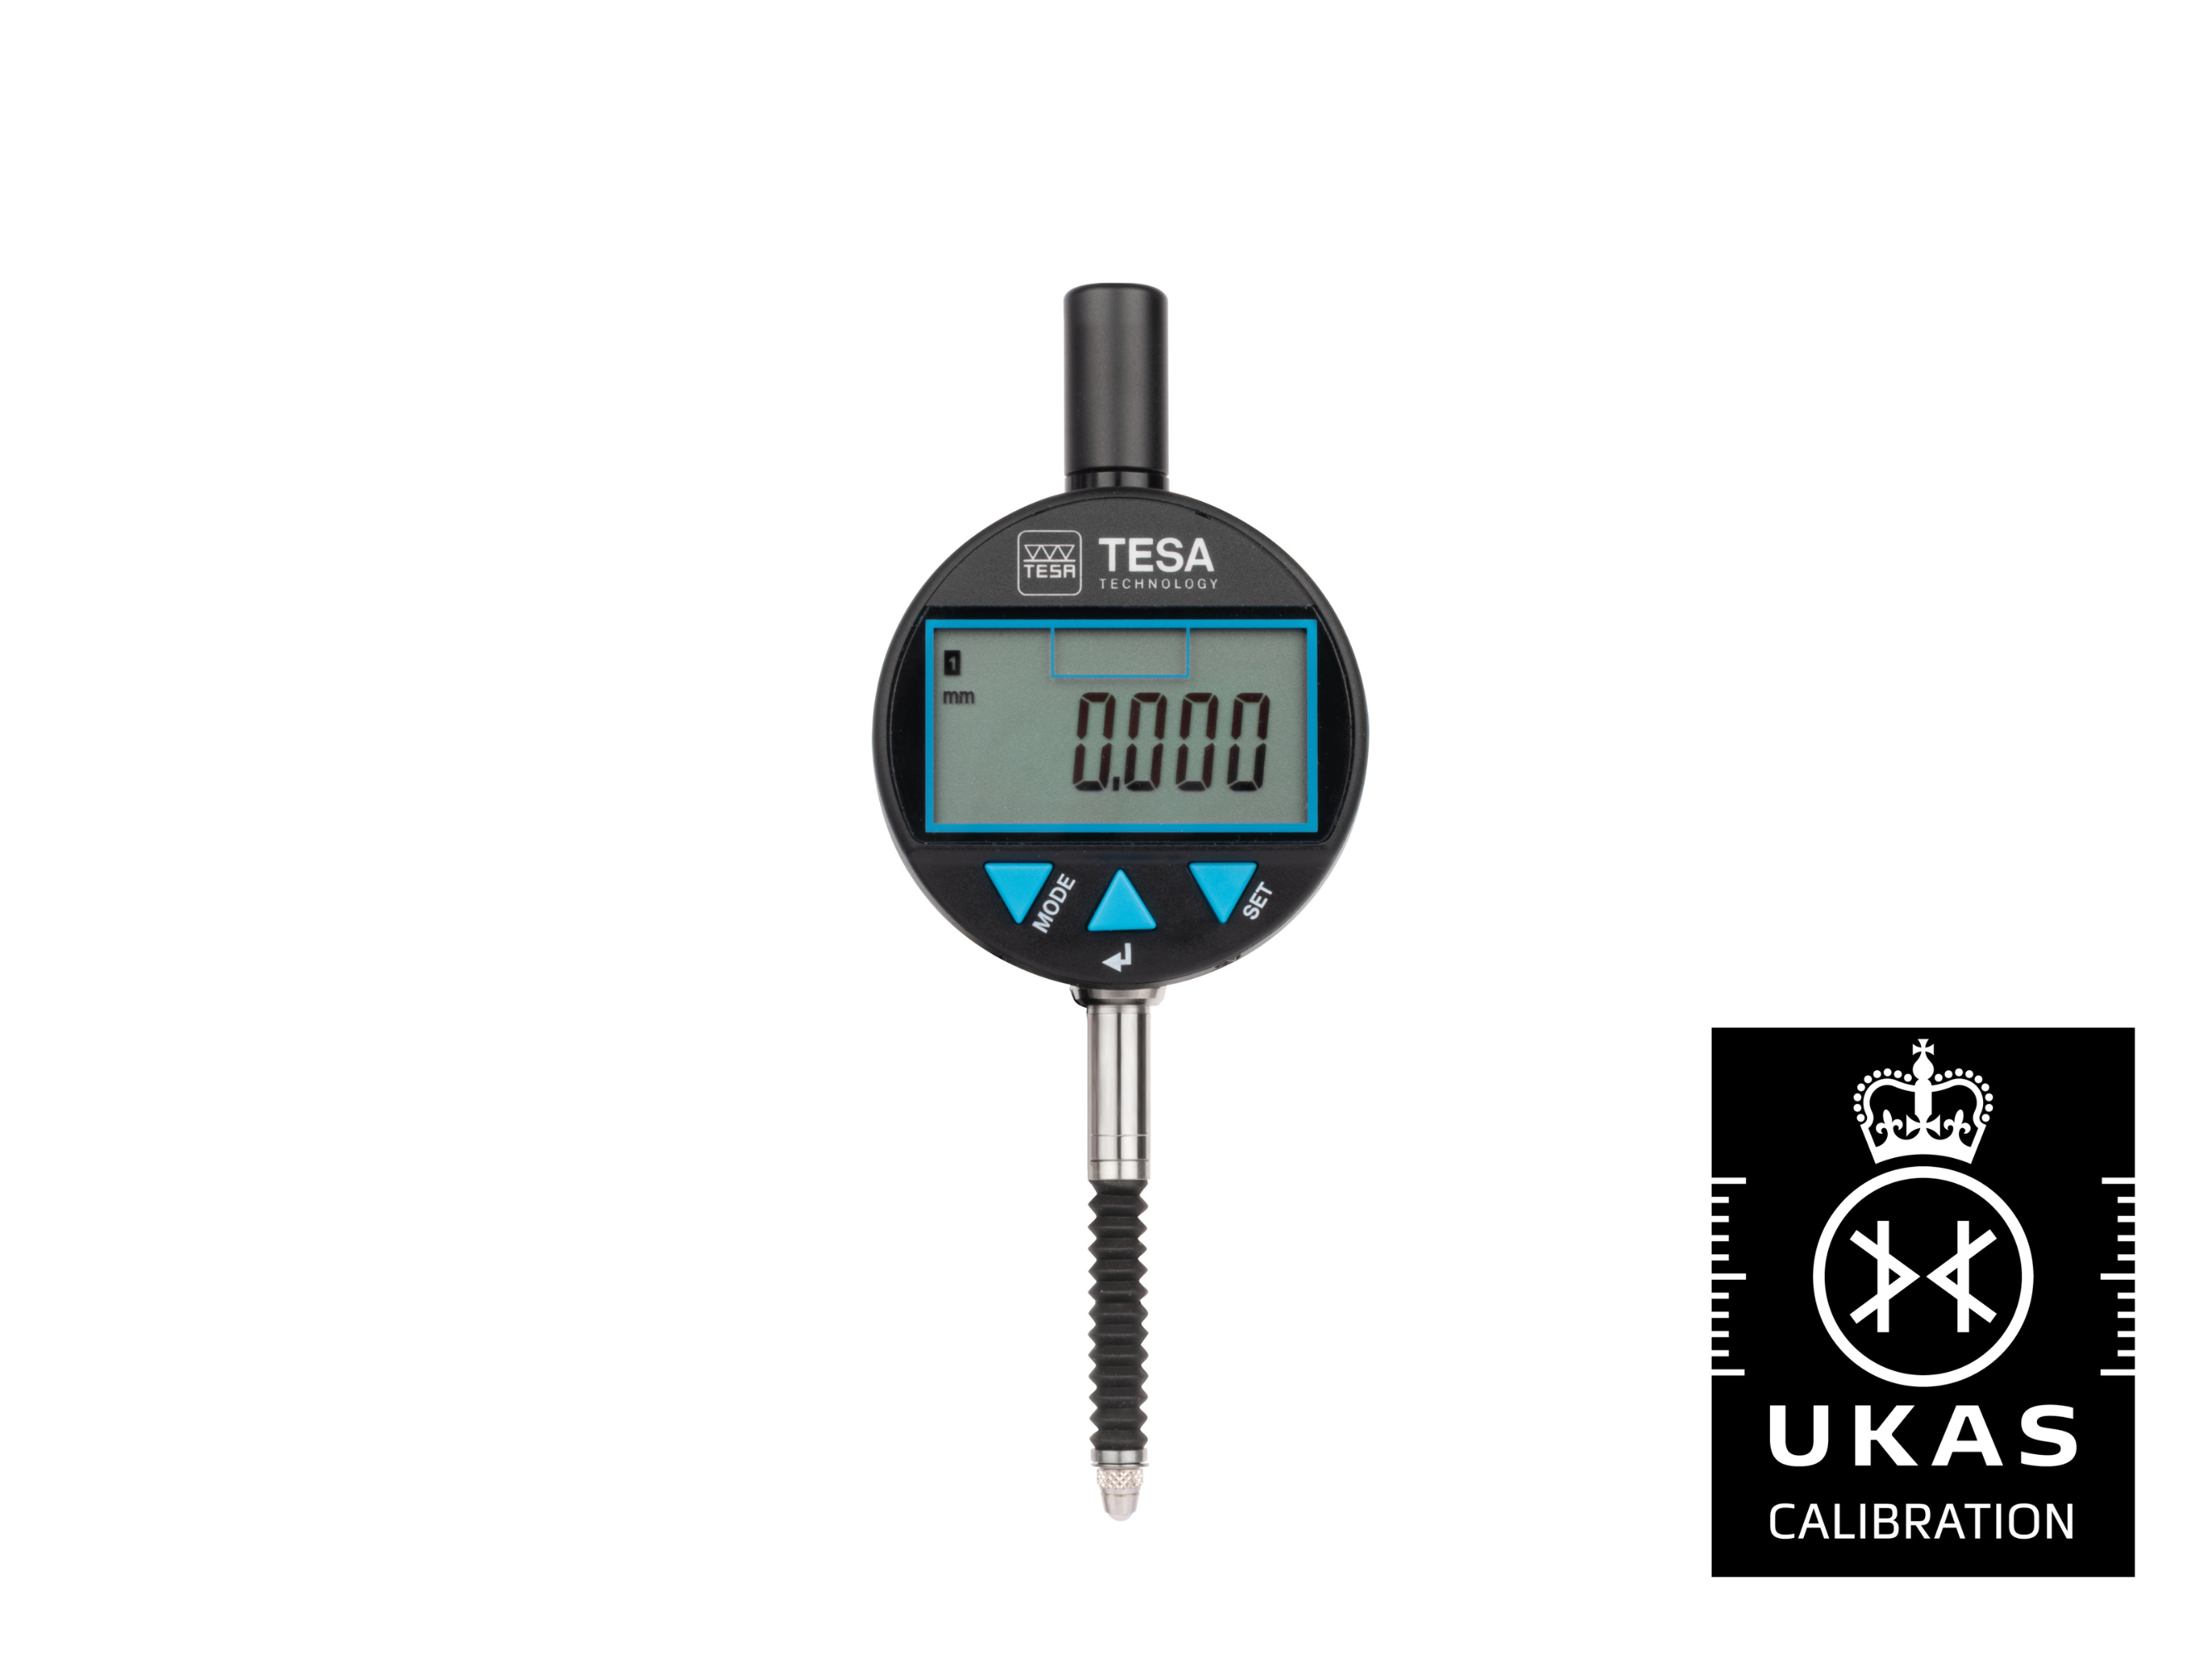 Tesa DIALTRONIC Digital Dial Gauge 12.5mm 0.001mm IP67 01930303 with UKAS Calibration